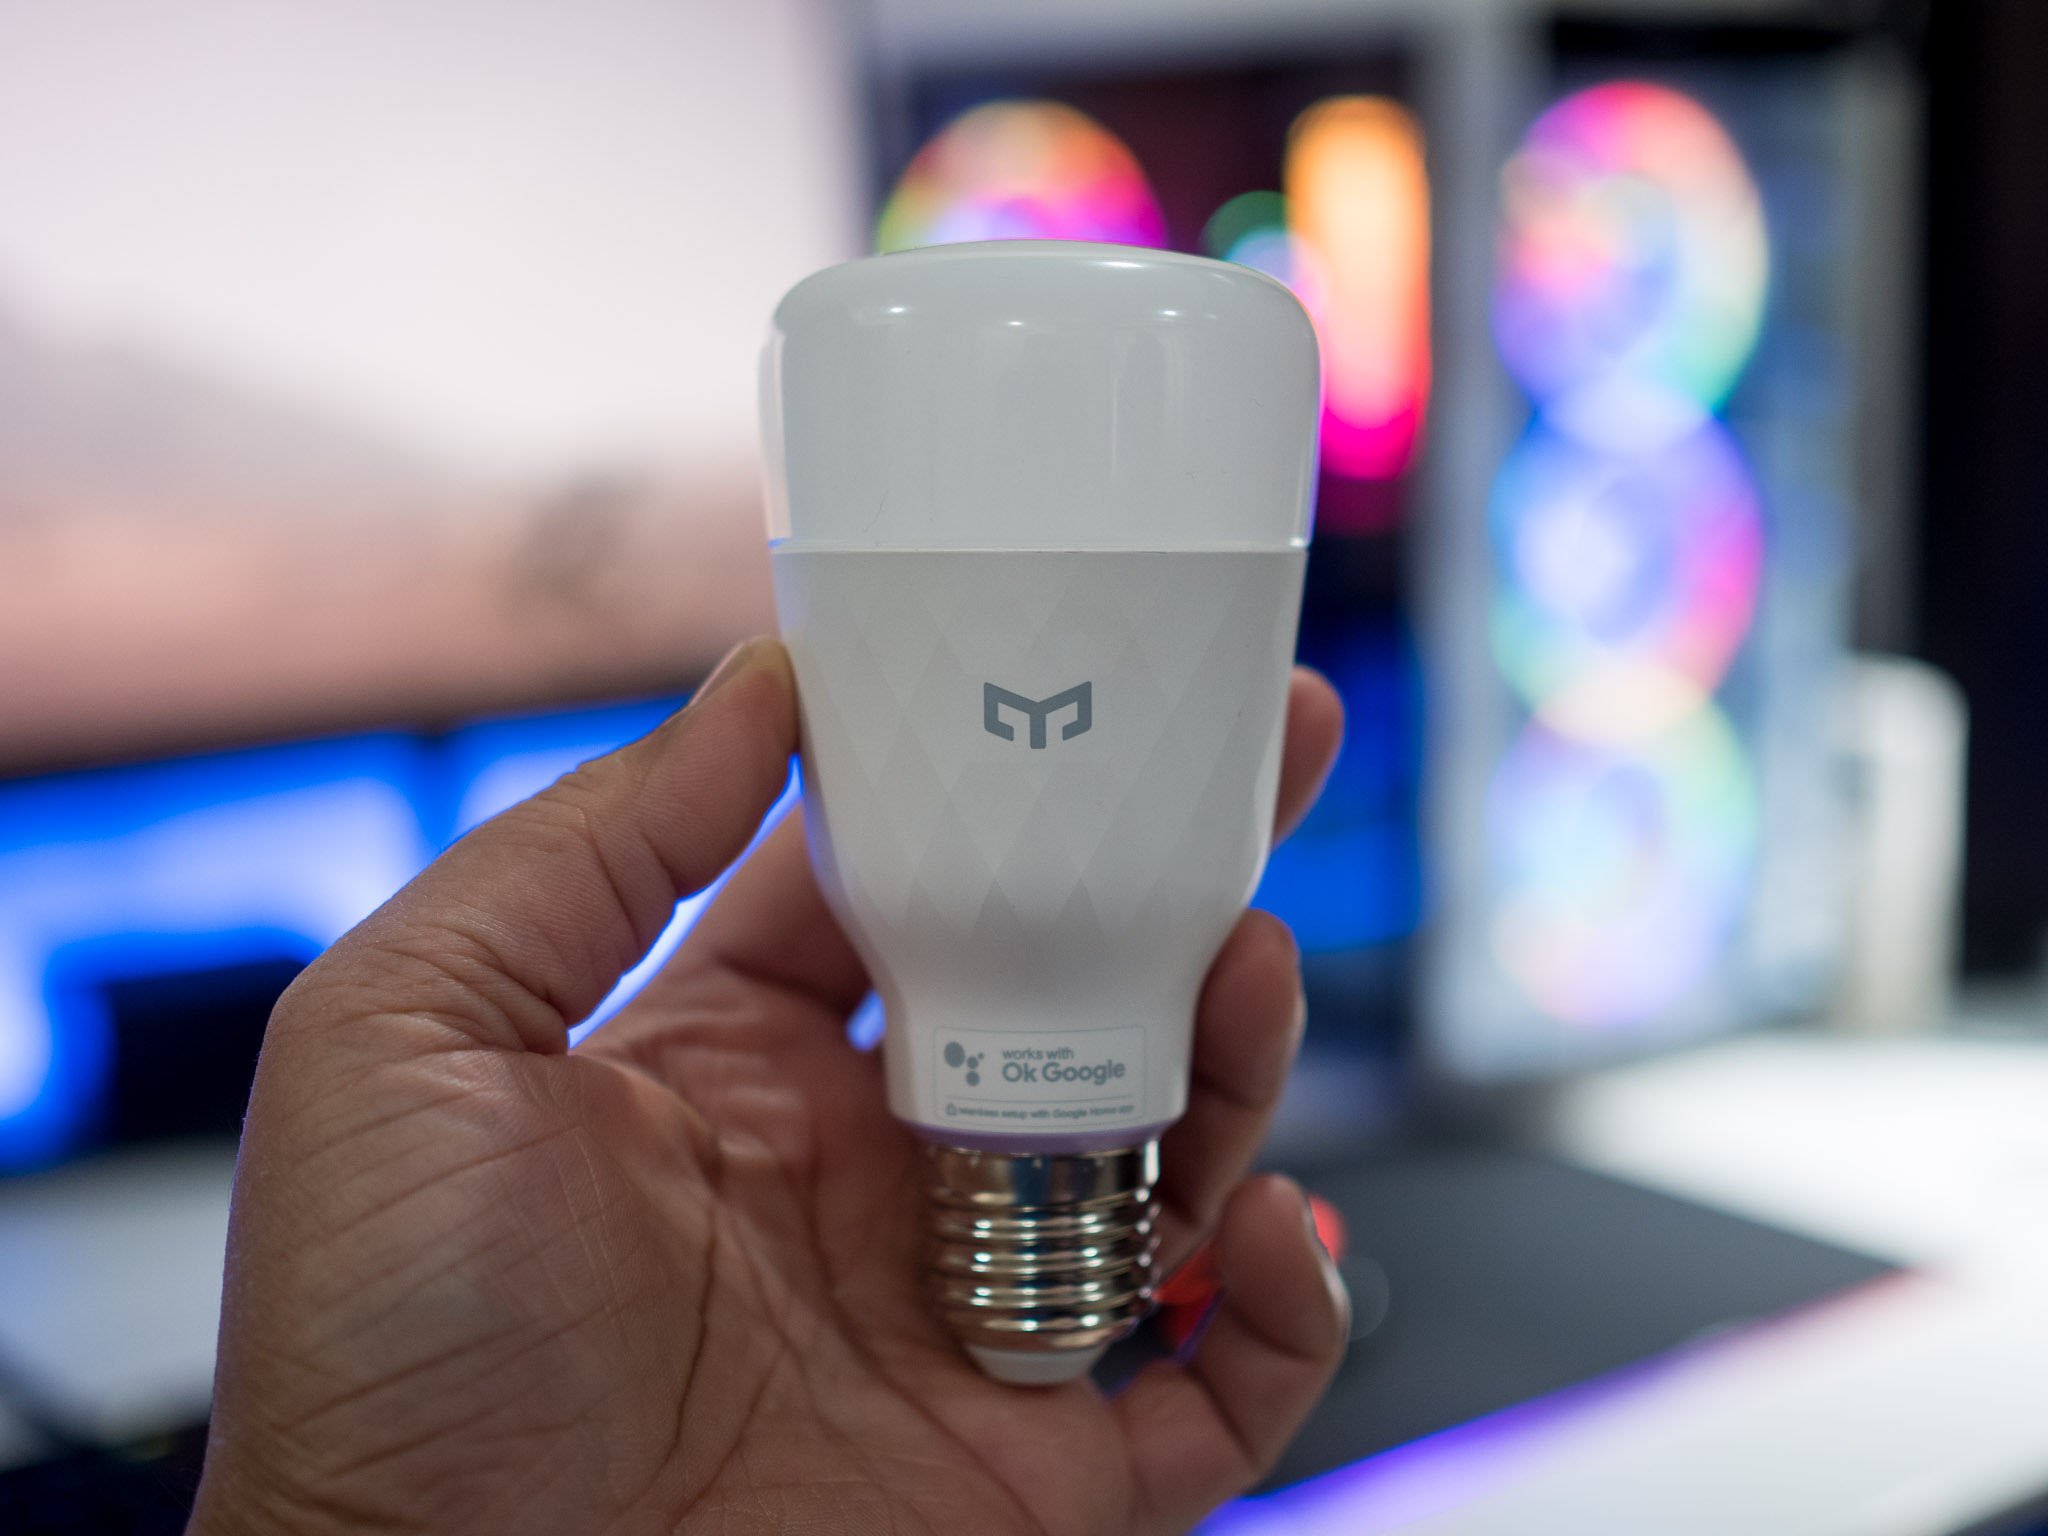 Yeelight - Smart Lighting, Smart LED Bulbs